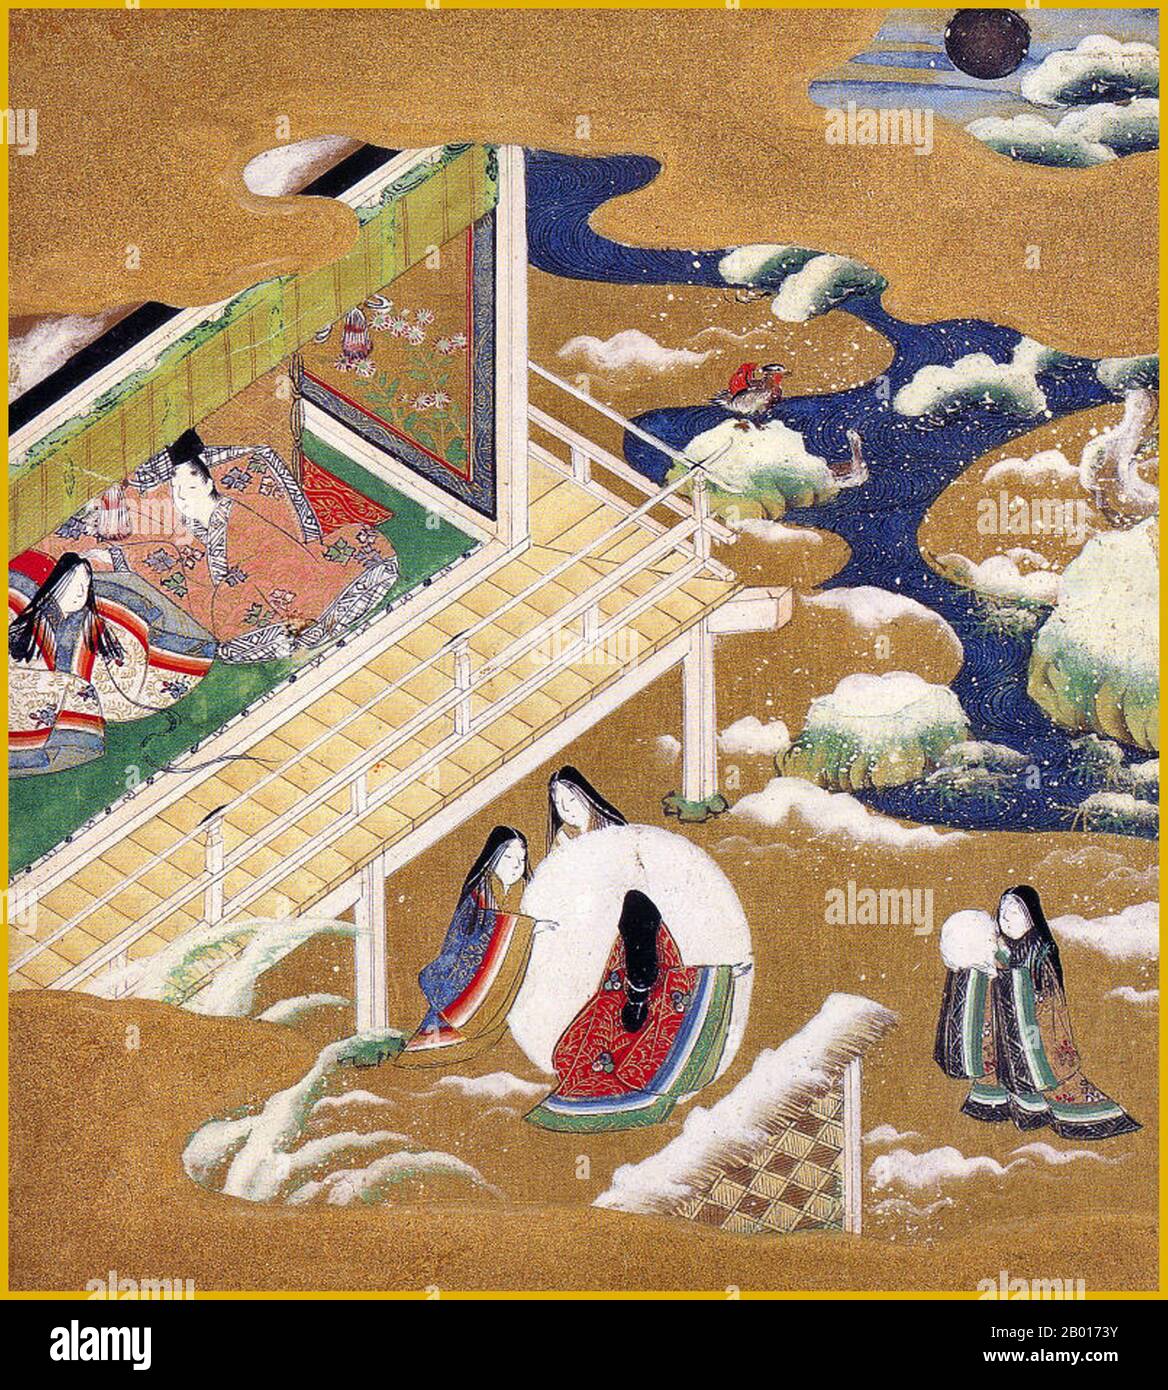 Japon: 'Chapitre 20 - Asagao (le Bluebell)'.Illustration du Monogatari de Genji (Tale de Genji), par Tosa Mitsuoki (21 novembre 1617 – 14 novembre 1691), fin du XVIIe siècle.'Le Tale de Genji' est une oeuvre de la littérature japonaise classique du début du XIe siècle par une dame en attente Murasaki Shikibu.L'histoire raconte la vie de Hikaru Genji, le fils de l'empereur japonais, et dépeint les modes de vie des courtisans élevées pendant la période Heian.Il est considéré par certains comme le premier roman du monde, et a été écrit dans un style archaïque et poétique qui est maintenant presque illisible. Banque D'Images